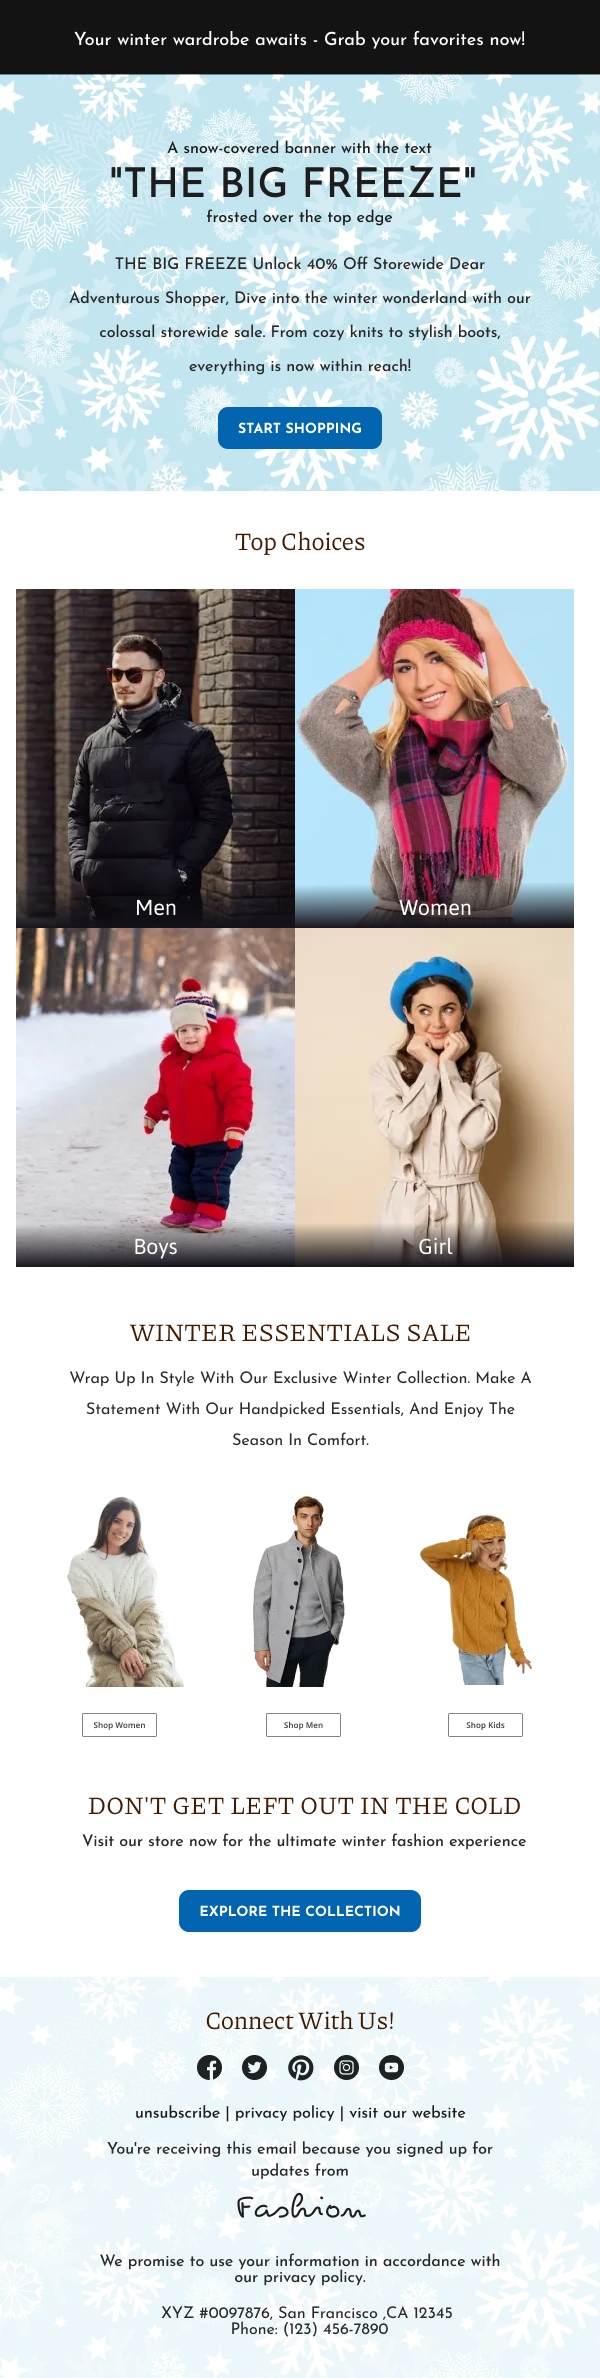 Fashion-Winter Essentials Sale